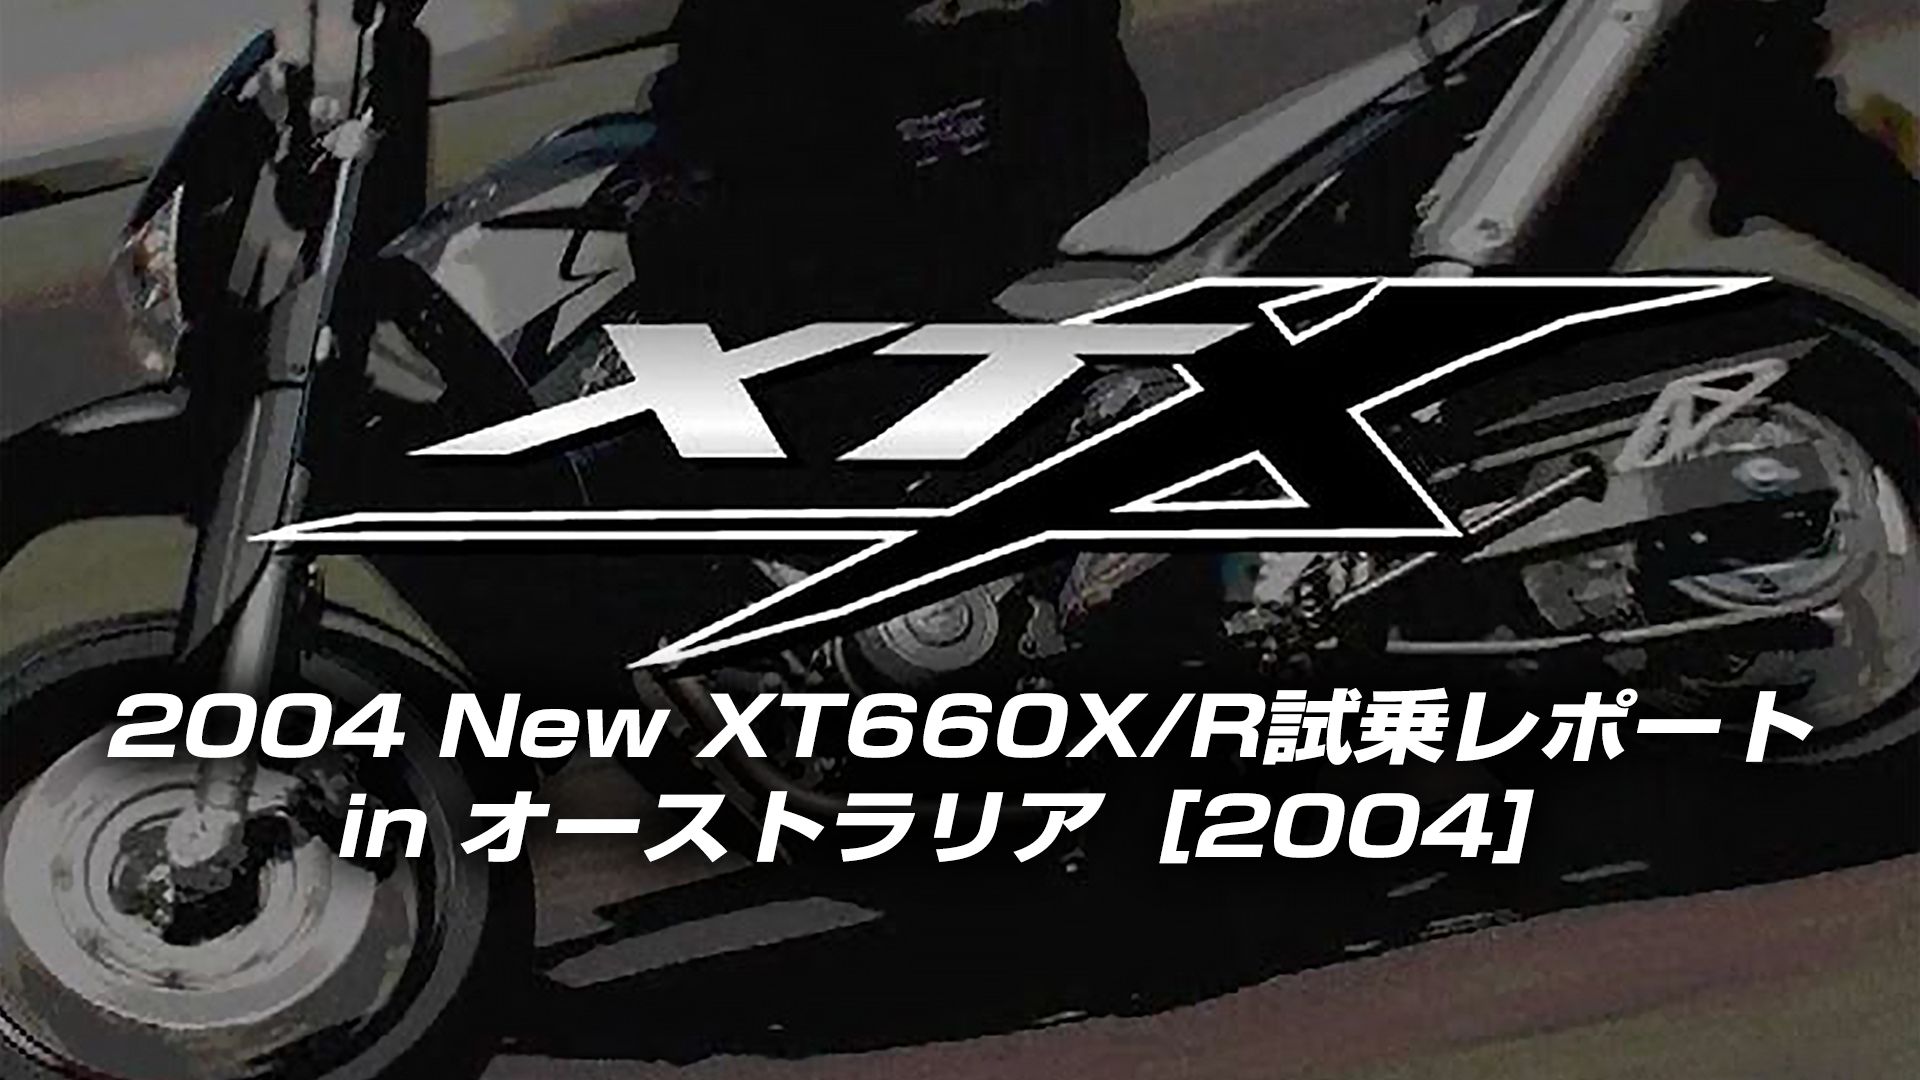 XT660X/R試乗レポート in オーストラリア 2004